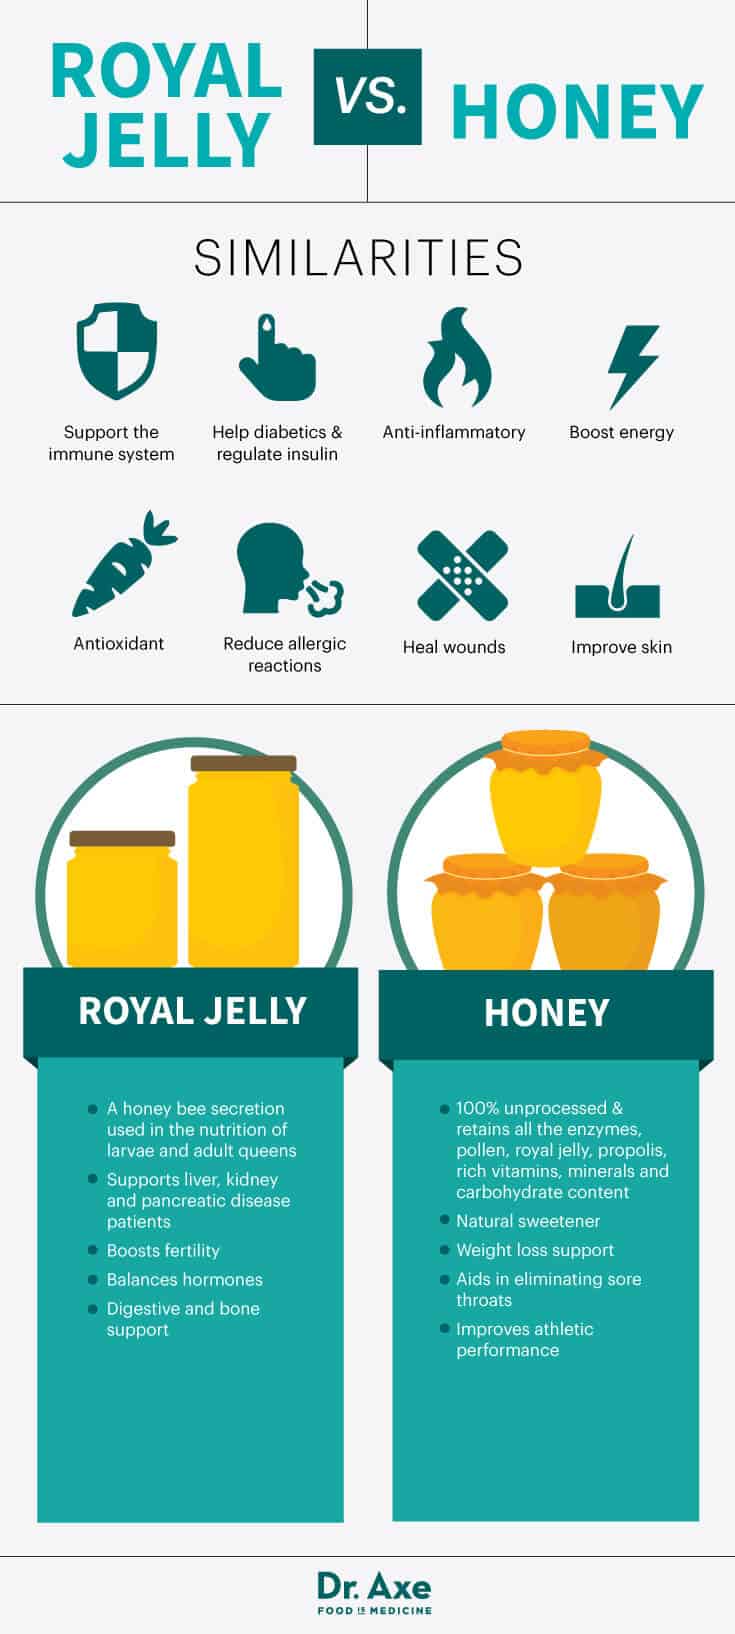 Royal jelly vs. honey - Dr. Axe